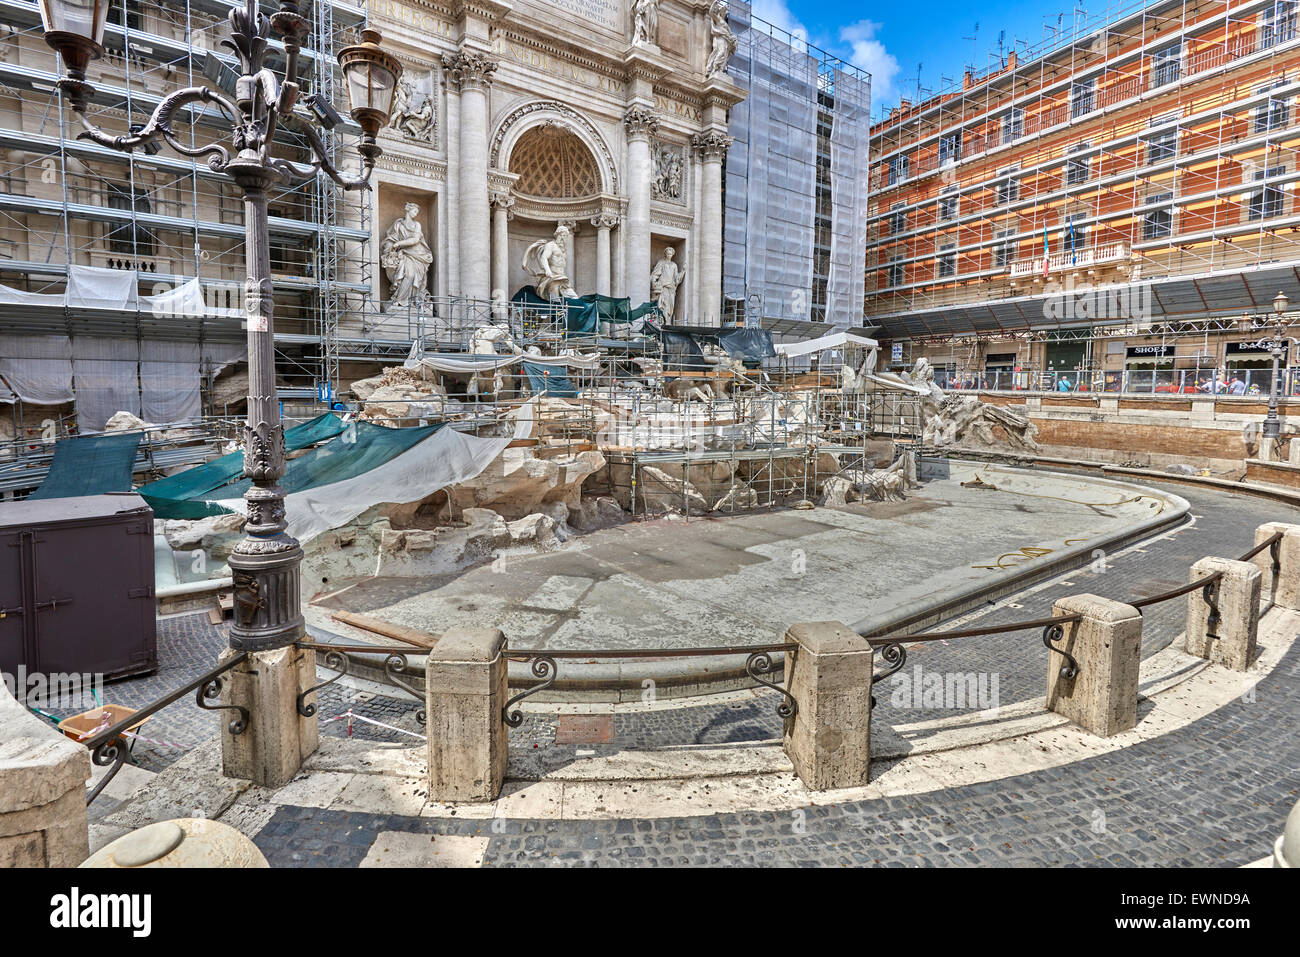 La fontaine de Trevi (Italien : Fontana di Trevi) est une fontaine dans le quartier de Trevi à Rome, Italie Banque D'Images